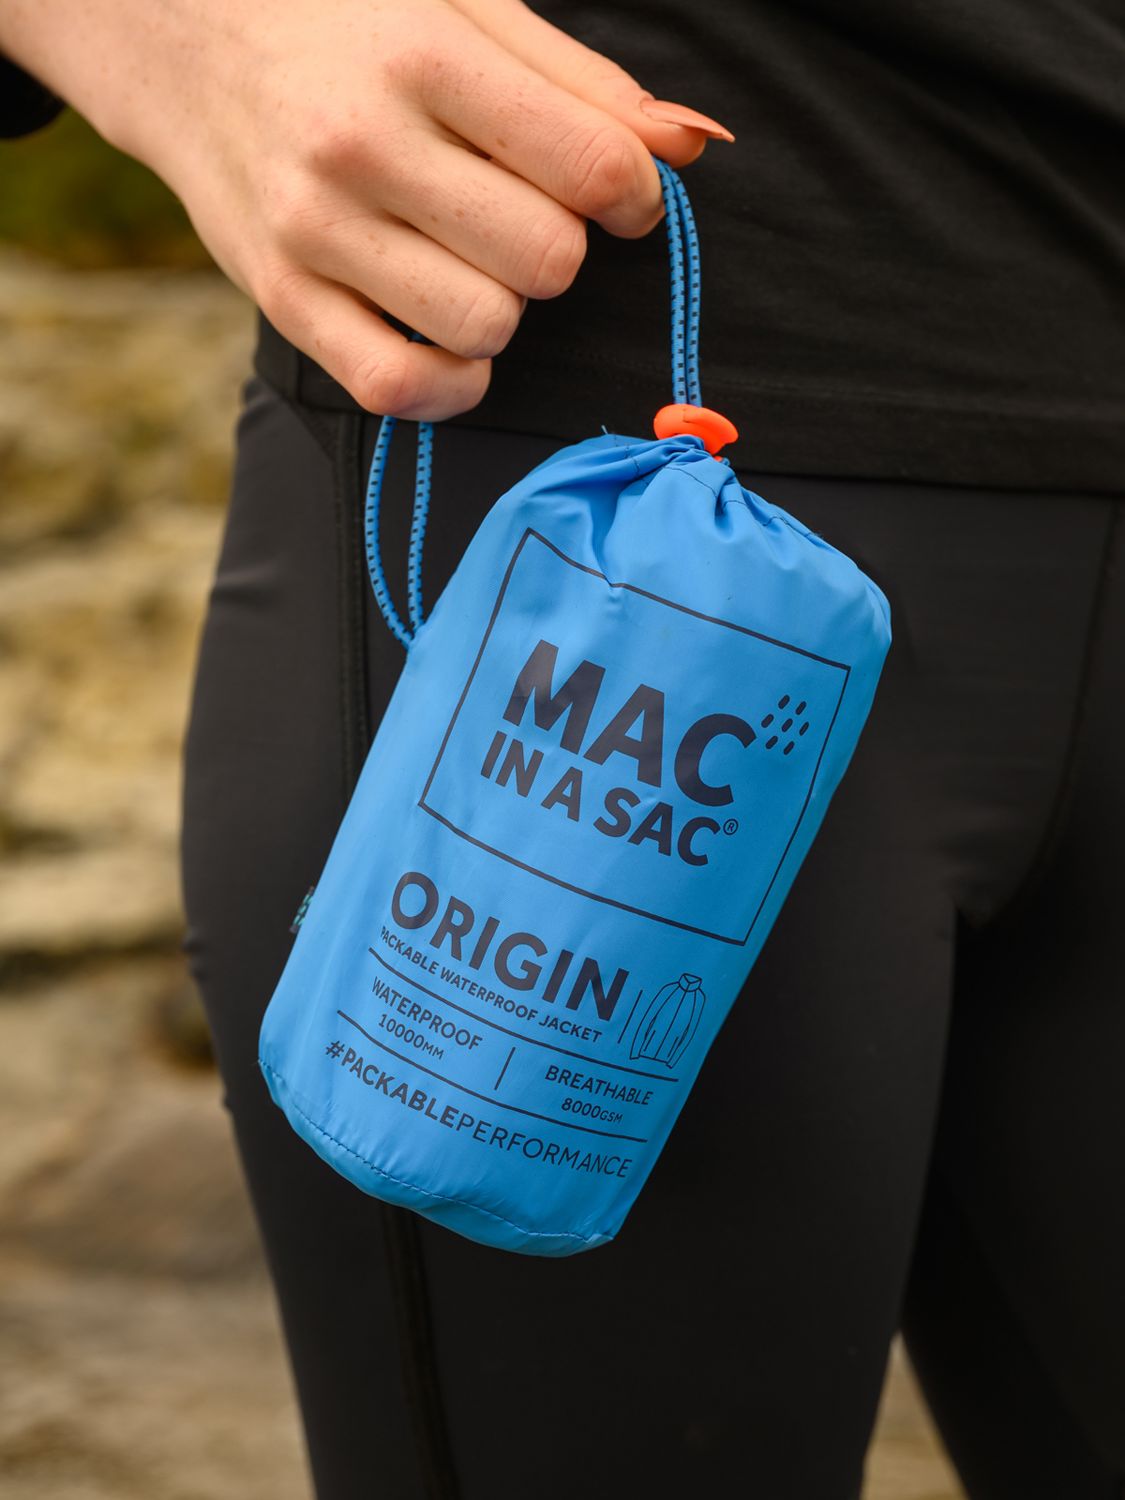 Buy Mac In A Sac Origin II Unisex Packable Waterproof Jacket Online at johnlewis.com